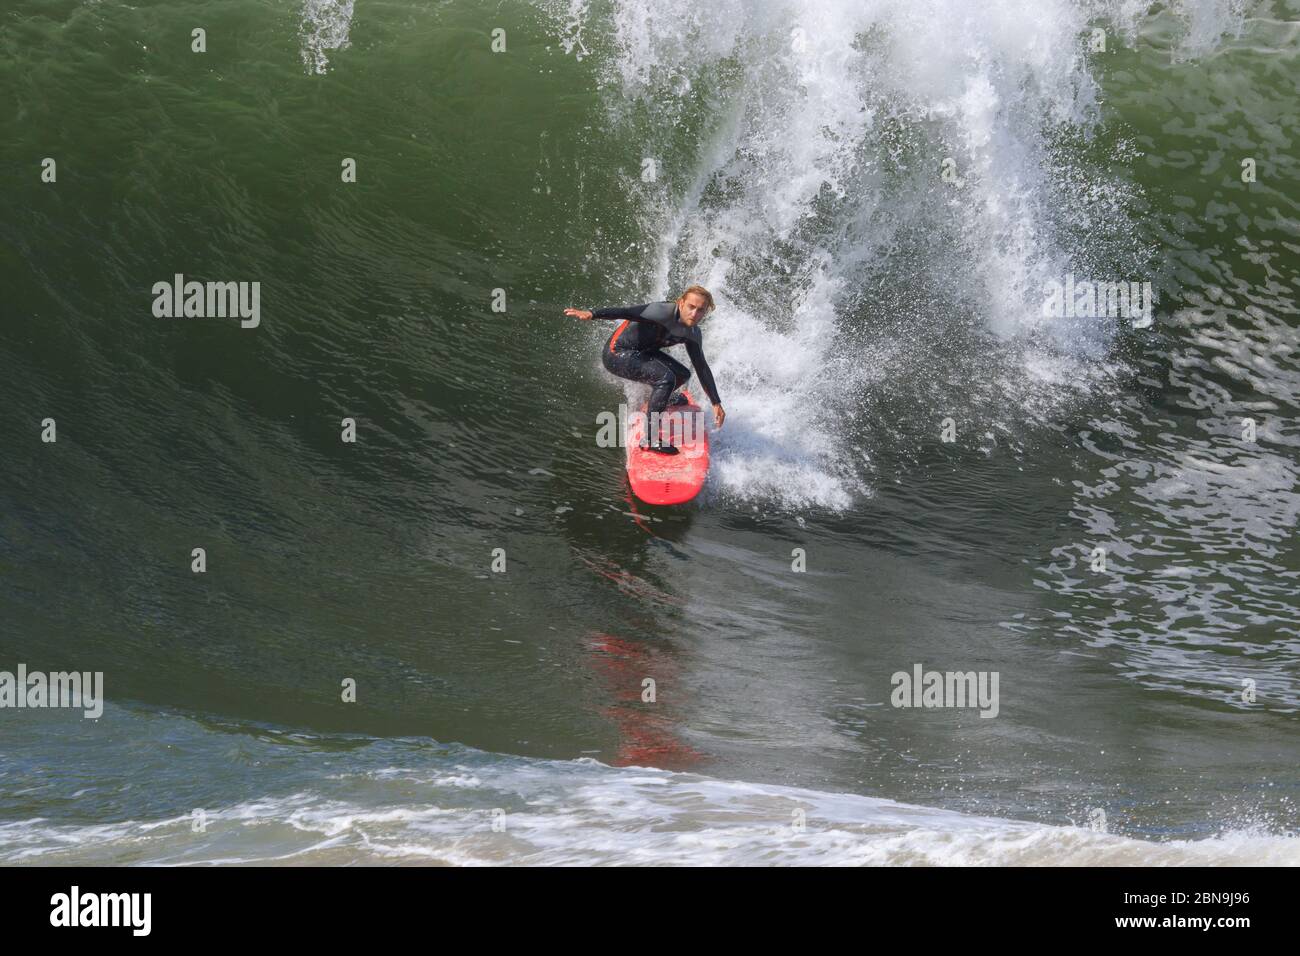 Les surfeurs sont autorisés à rentrer dans l'eau à The Wedge, Newport Beach, Californie . USA. Pendant le coronavirus de 2020. Surfer sur la grande vague Banque D'Images